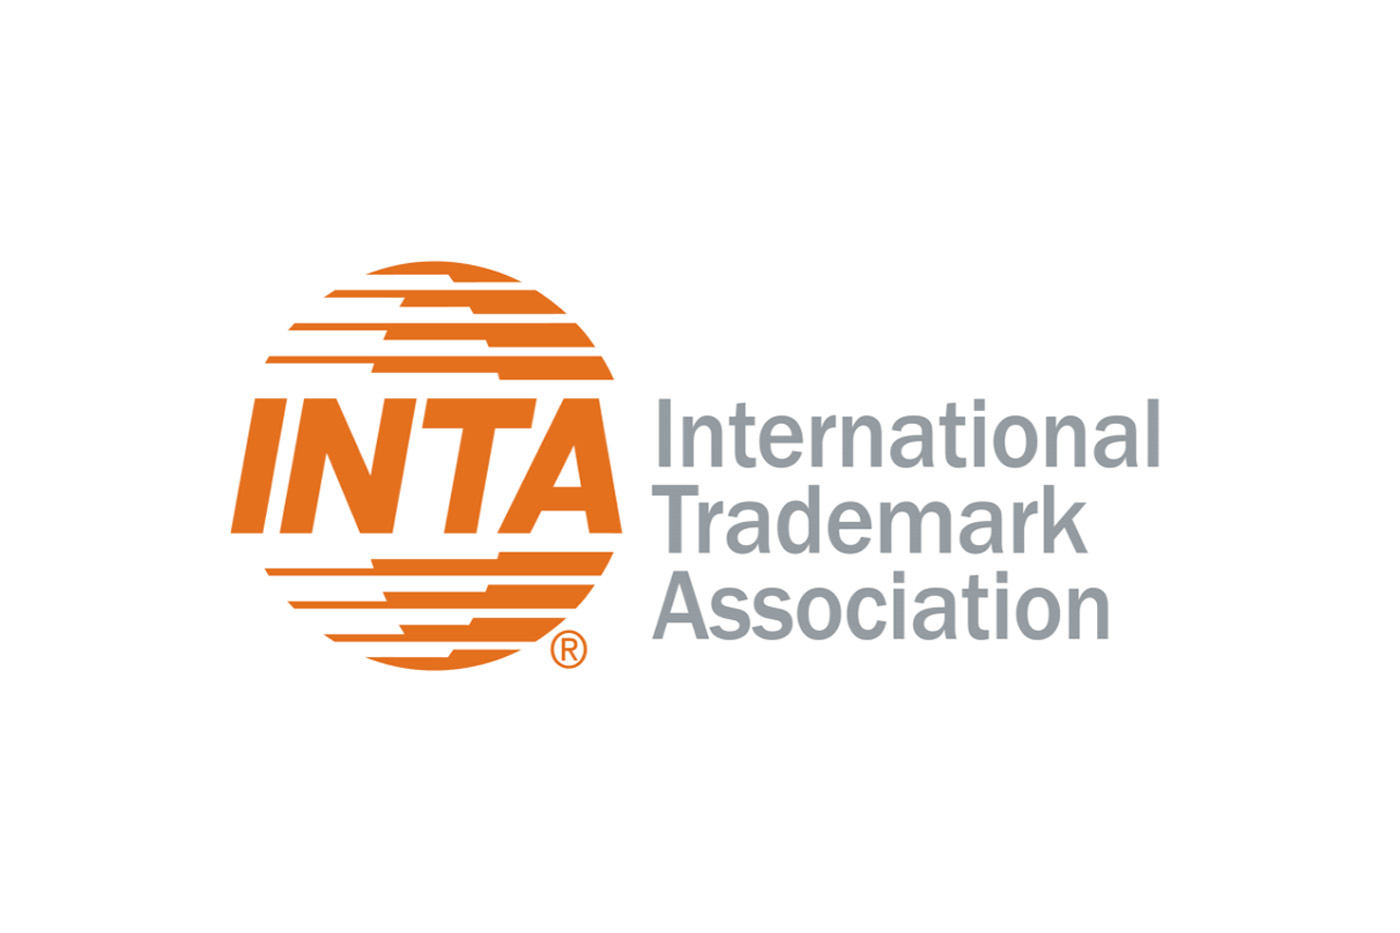 international trademark association logo